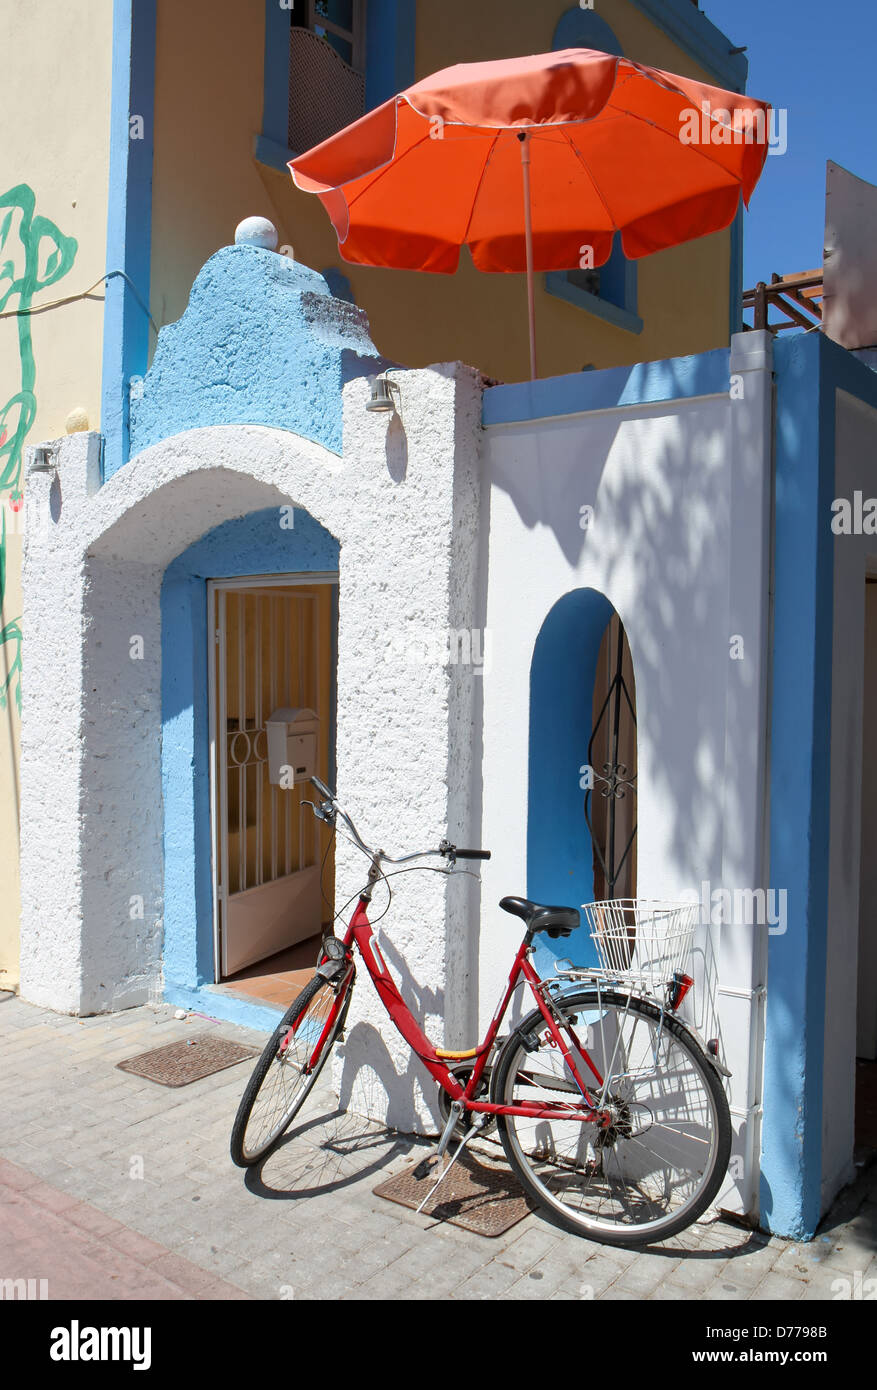 Вело греческий. Греция велосипед синие двери. Грек на велосипеде. Греция велосипед картинки. Как покрашены греческие домики.